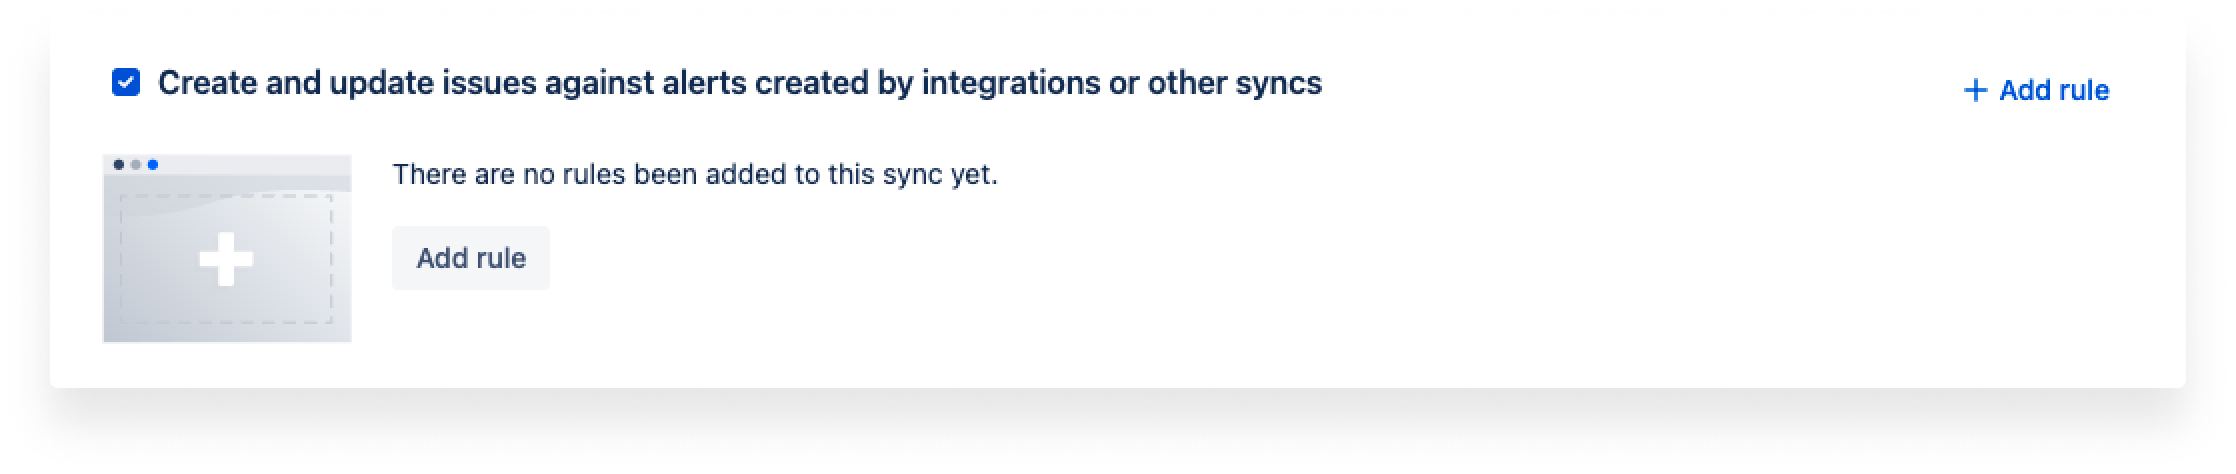 Sync で課題を作成/更新するルールを追加する